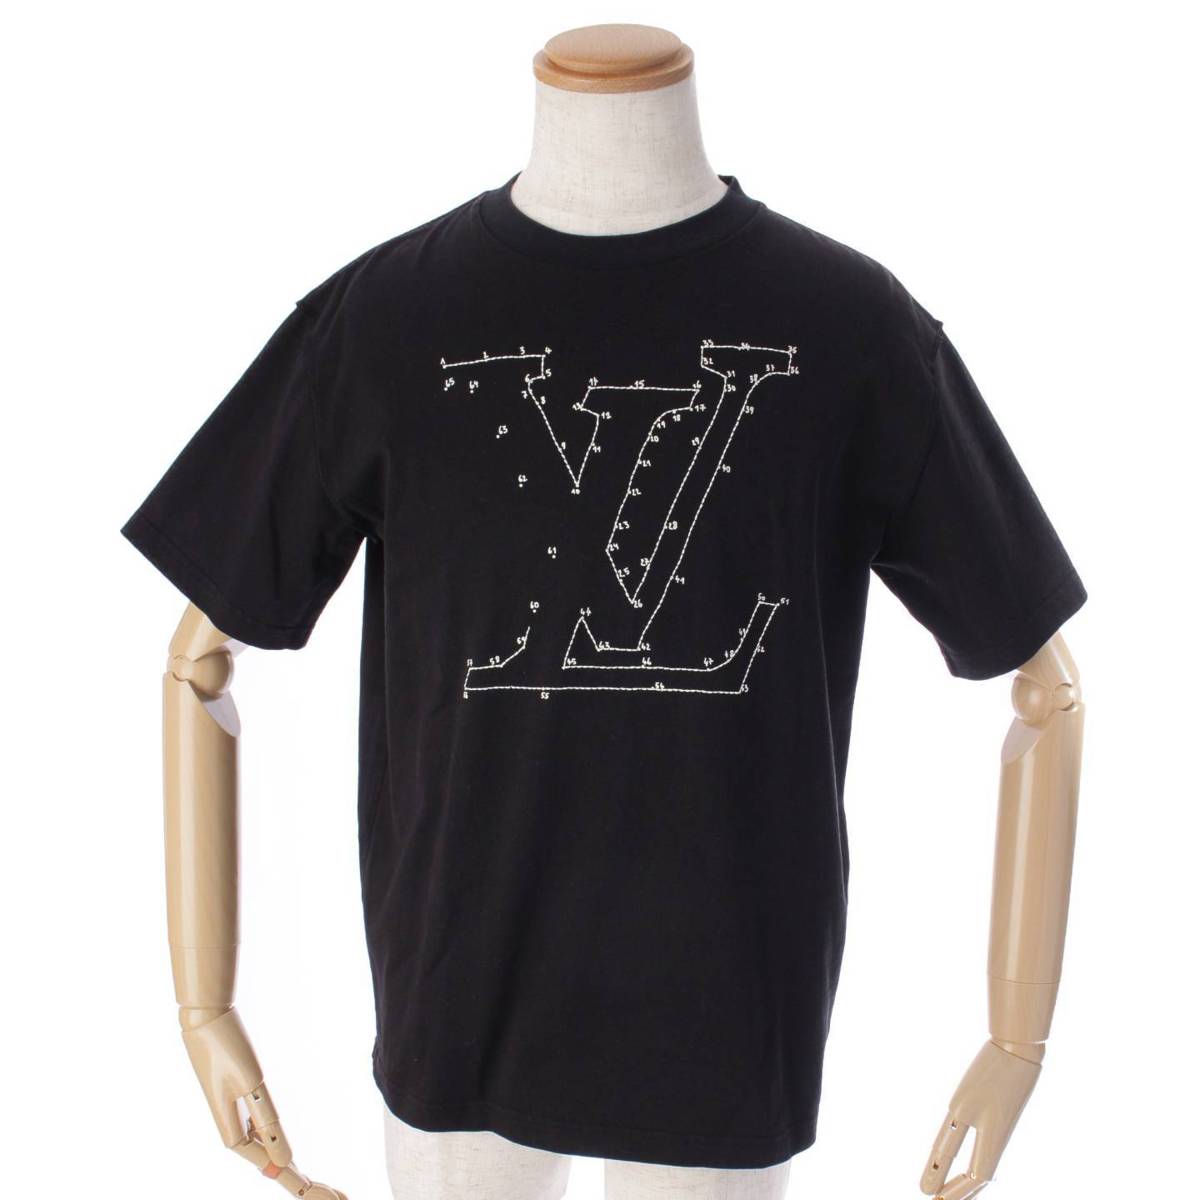 ルイヴィトン(Louis Vuitton) メンズ ロゴステッチ 刺繍 Tシャツ カットソー ヴァージルアブロー ブラック M